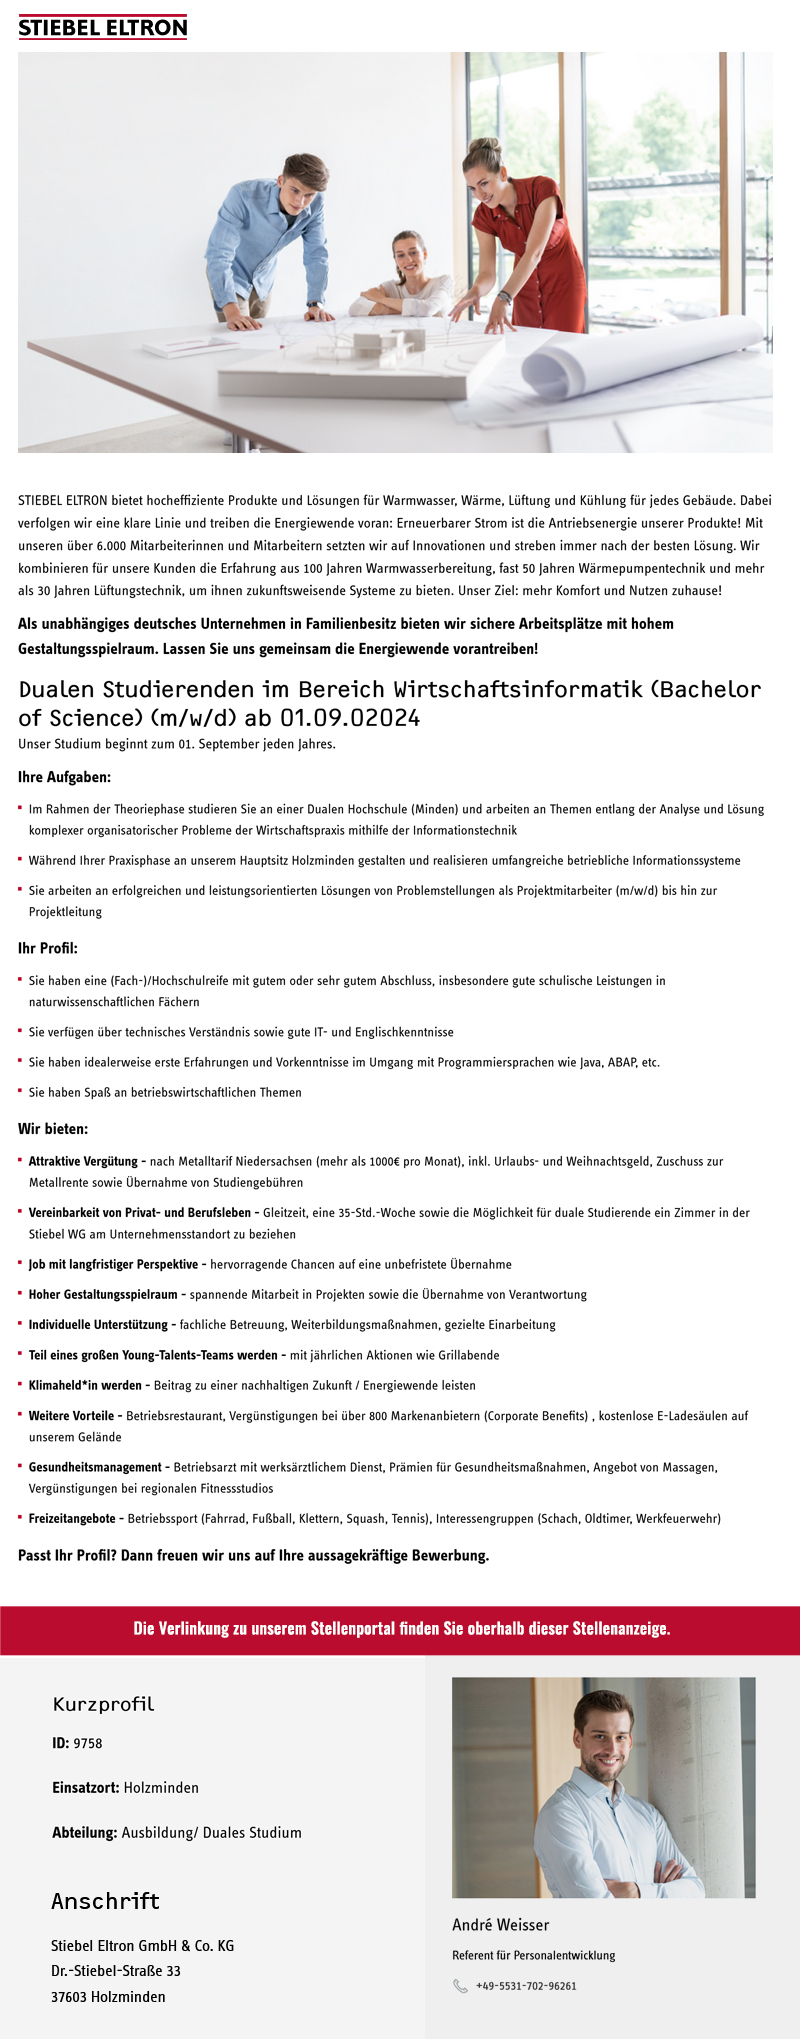 Dualen Studierenden im Bereich Wirtschaftsinformatik (Bachelor of Science) (m/w/d) ab 01.09.02024 - Stiebel Eltron GmbH & Co. KG